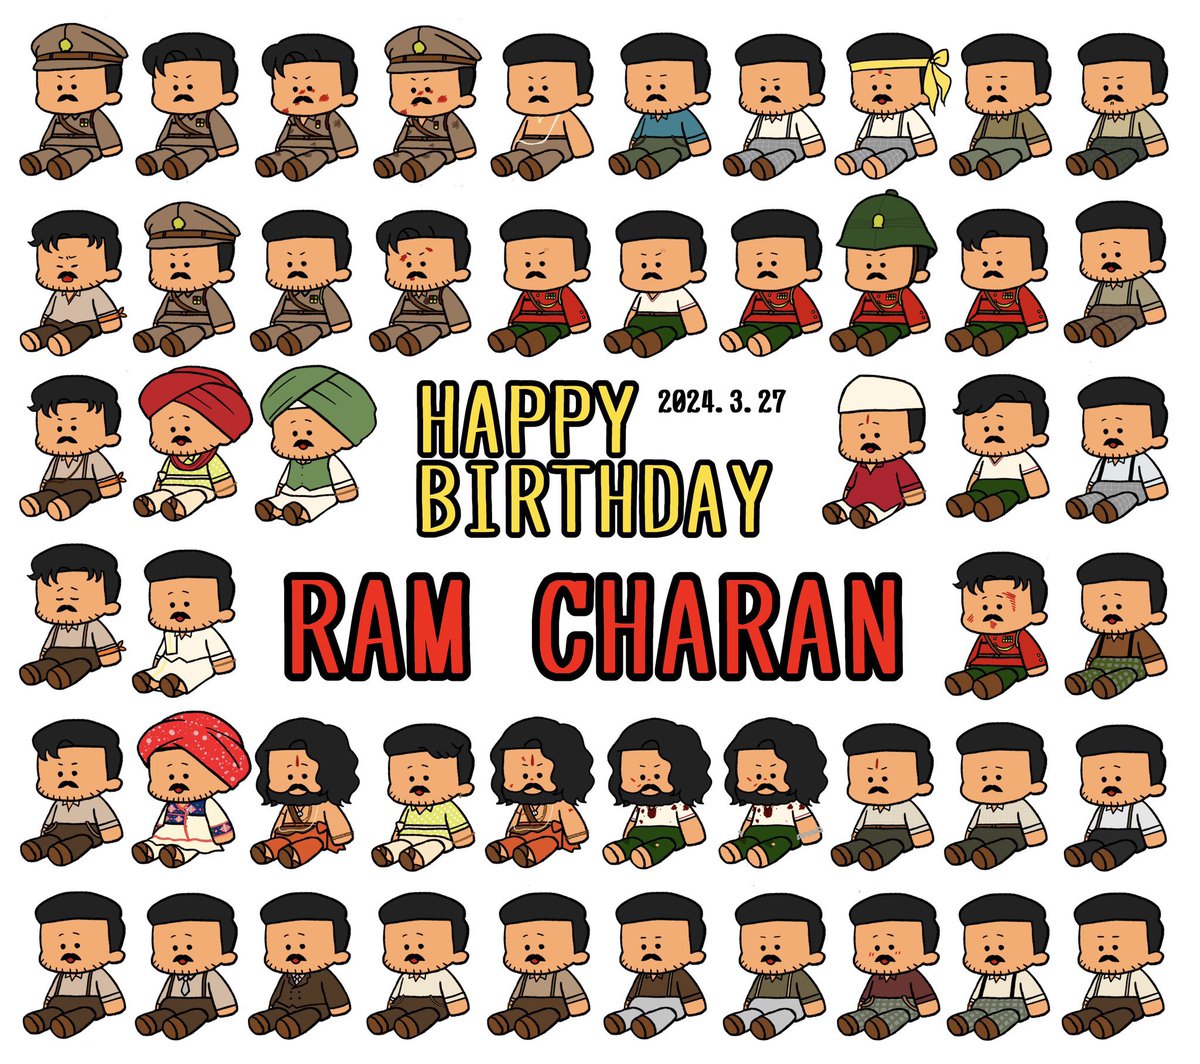 チャランさんお誕生日おめでとうございます‼️🌸🎉
チャランさんが大好きです‼️
RRRが大好きです‼️‼️‼️‼️

#HBDRamCharan 
#HappyBirthdayRamCharan
#HBDRamCharanJapan